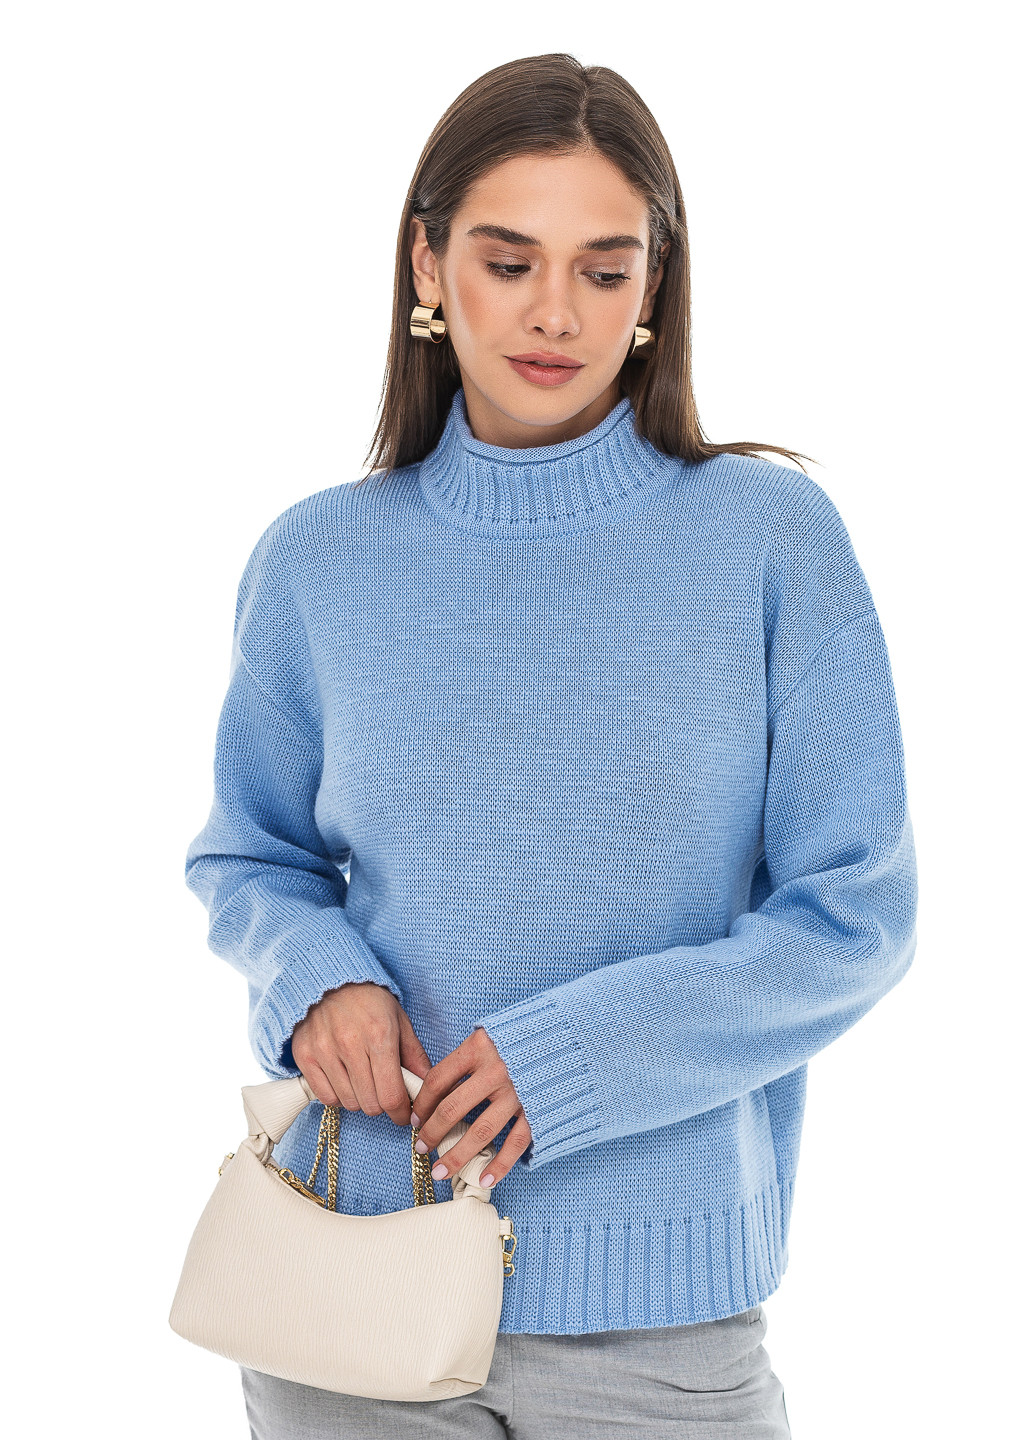 Голубой свободный свитер - стойка SVTR